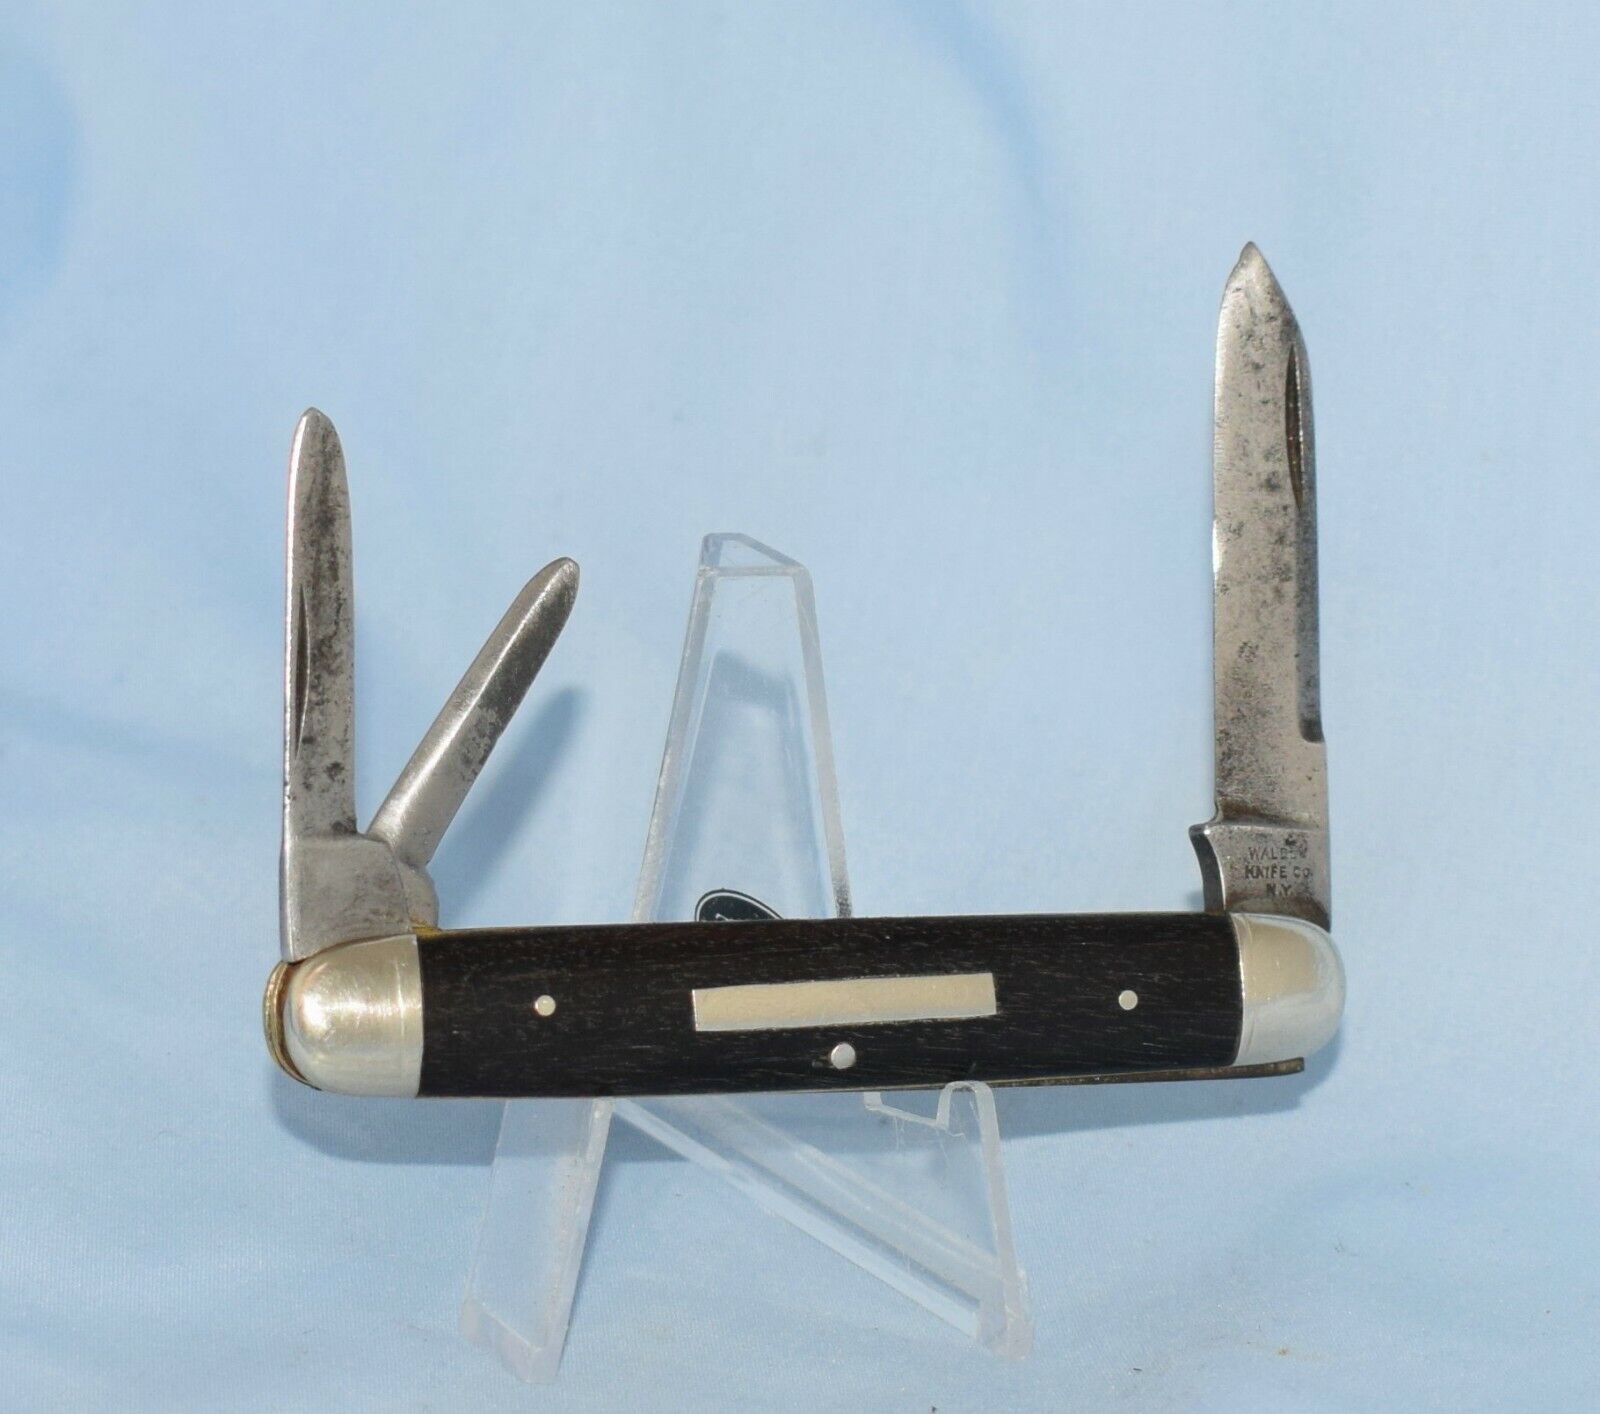 RARE VINTAGE WALDEN KNIFE CO EBONY EQUAL END WHITTLER KNIFE 1874-1923 NO CASE /B